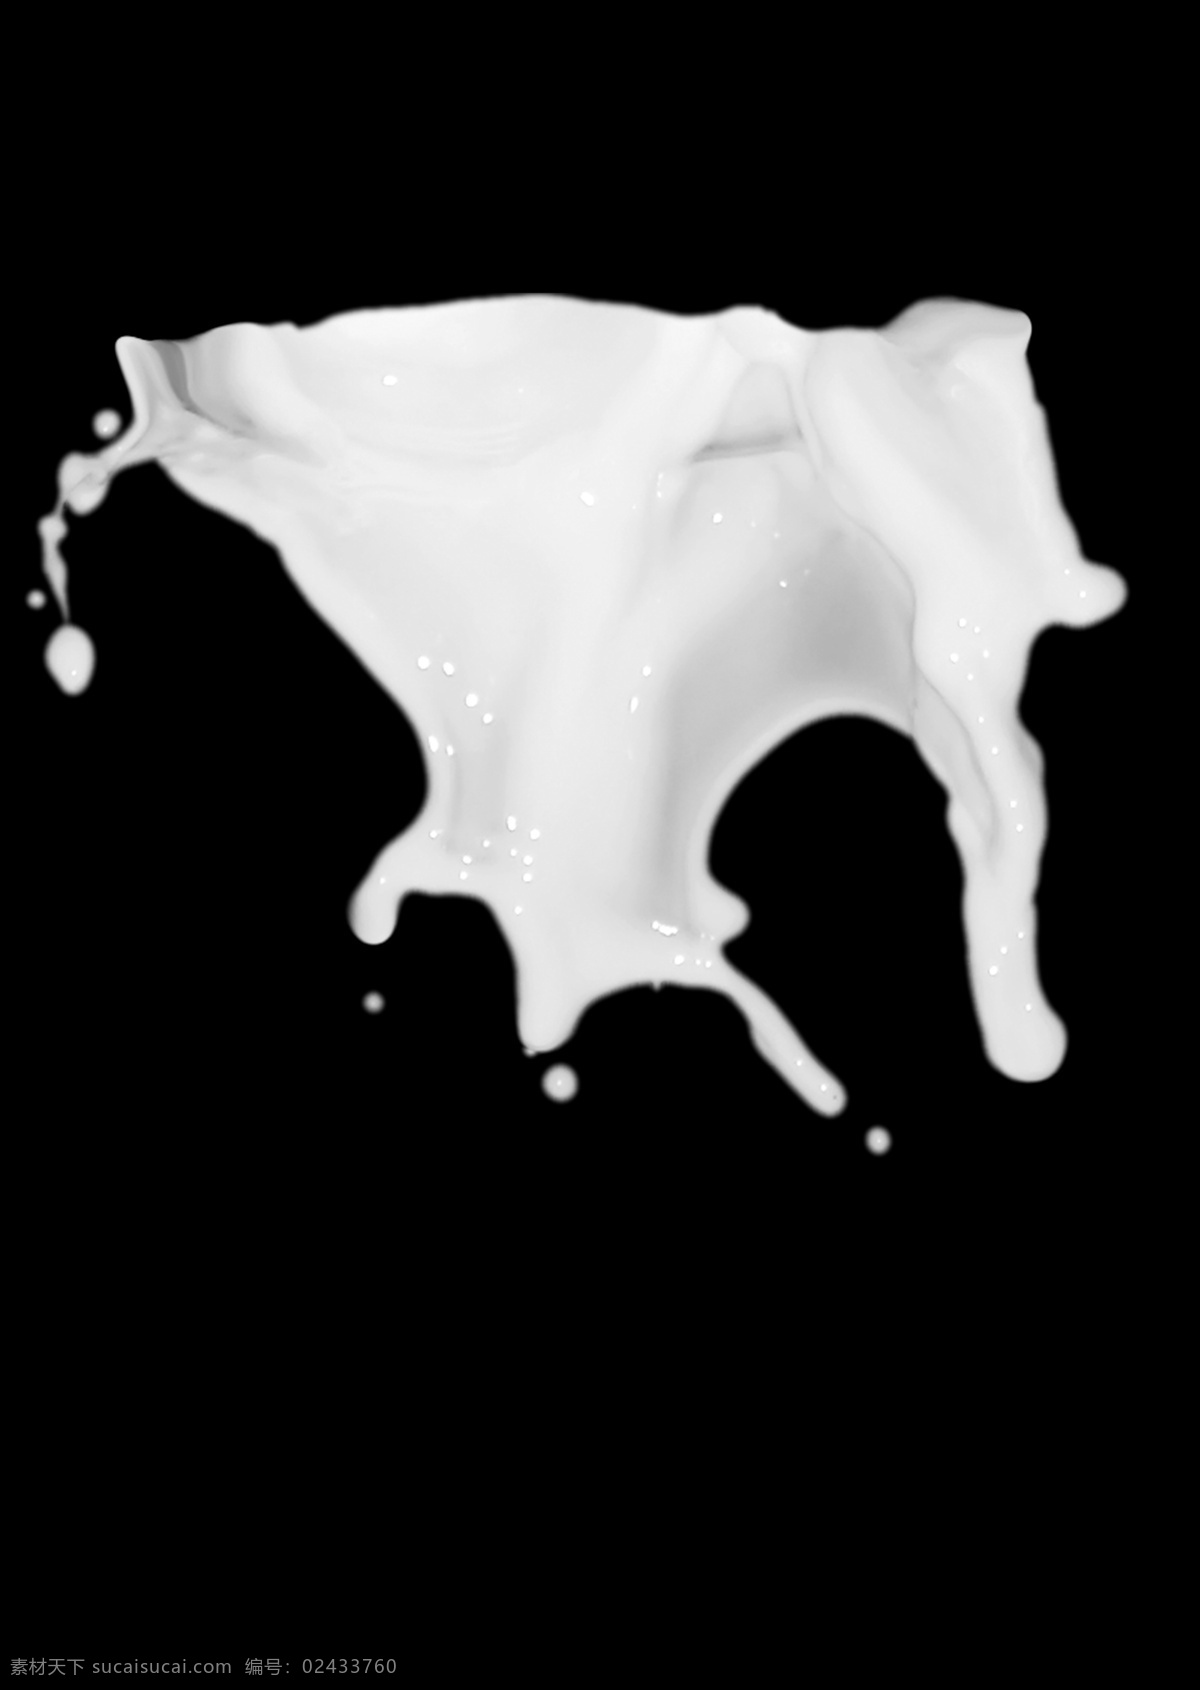 牛奶喷溅图案 液态牛奶 牛奶图案 喷溅效果 鲜牛奶素材 流体素材